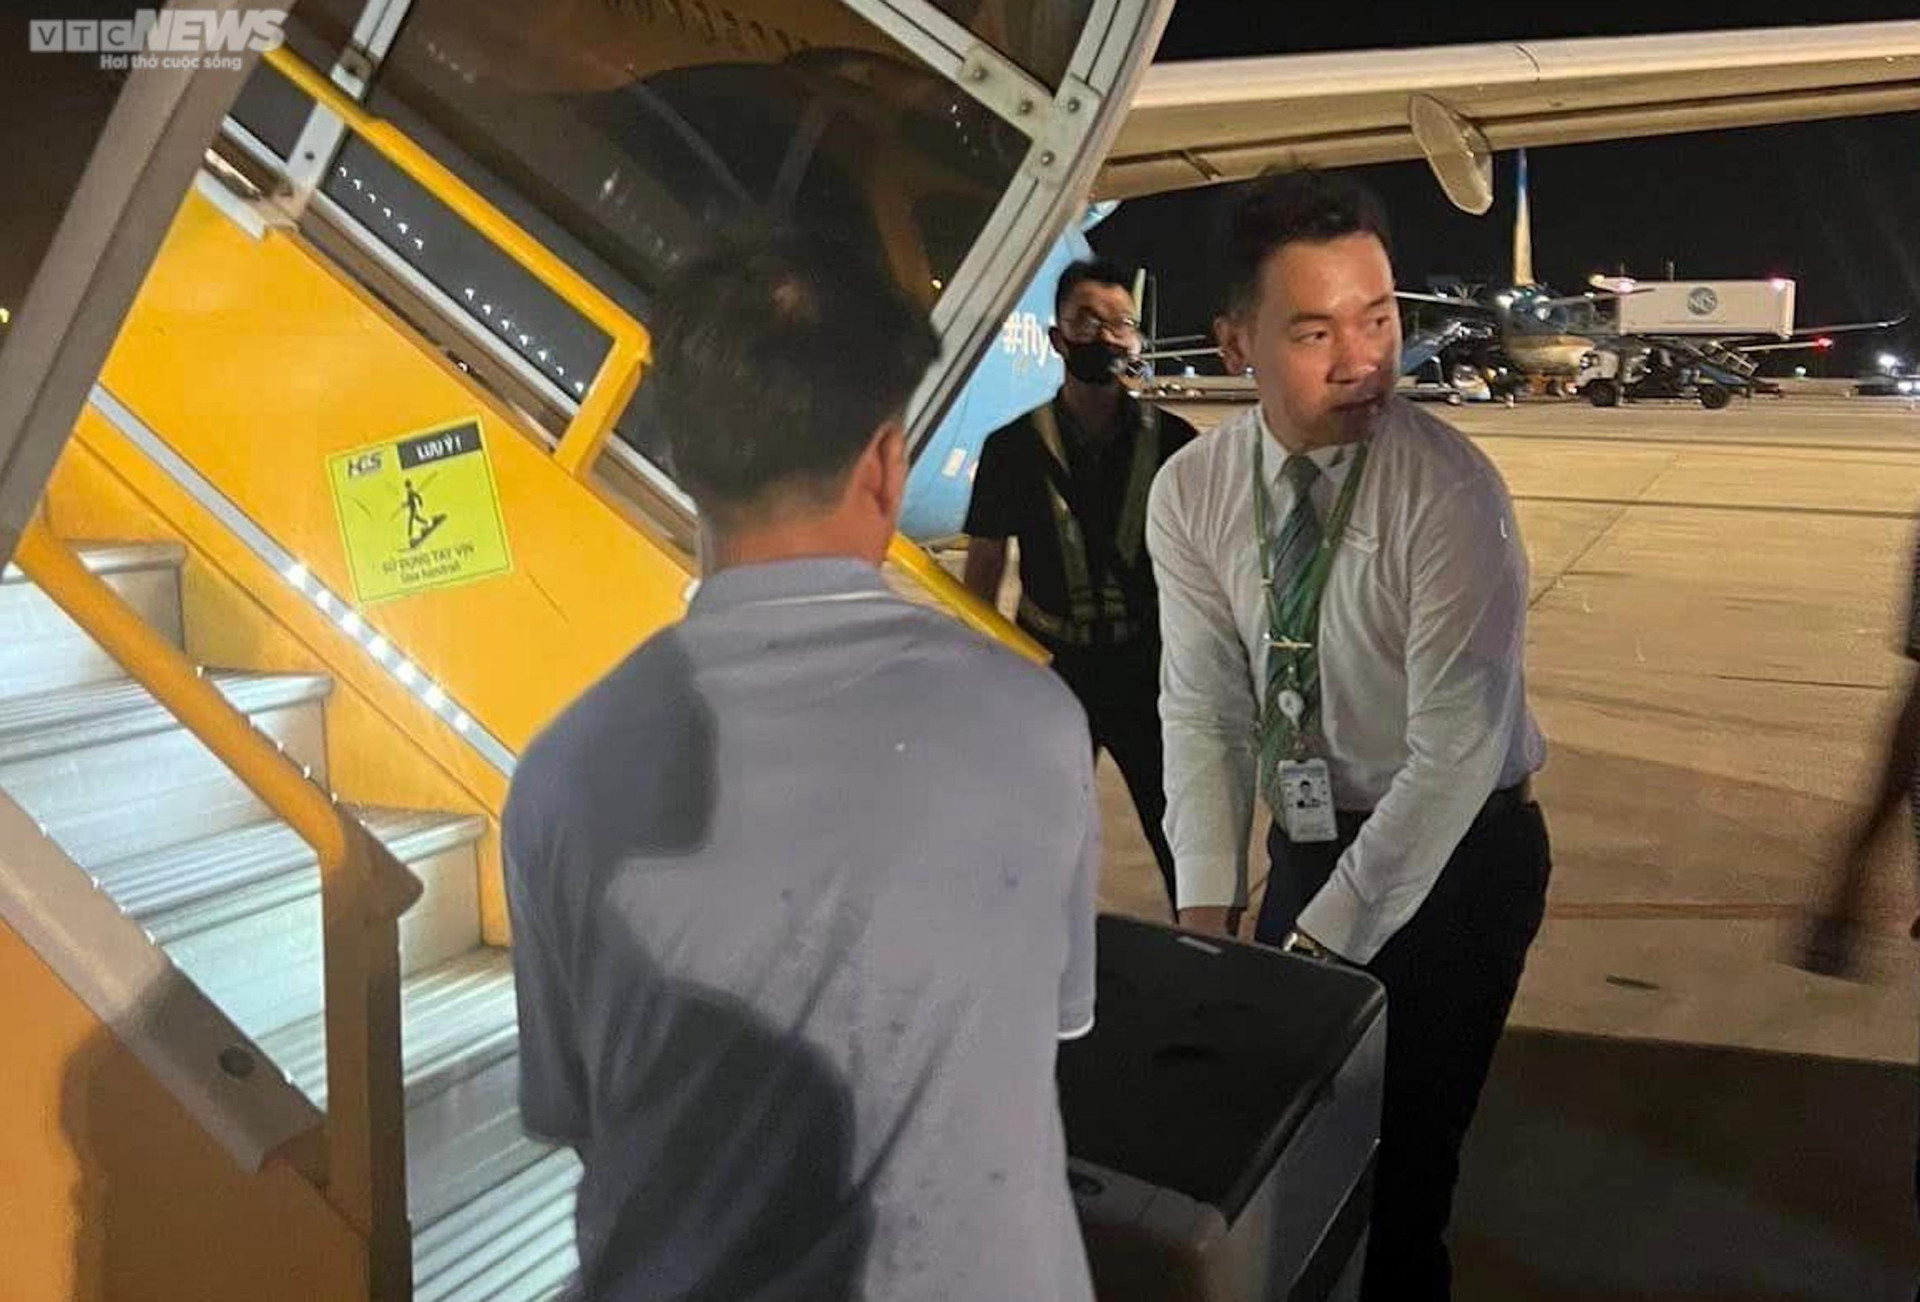 Các bác sĩ Bệnh viện Trung ương Huế cùng nhân viên hãng bay cùng vận chuyển thùng đựng trái tim từ người hiến tạng lên máy bay về Thừa Thiên - Huế cứu người.